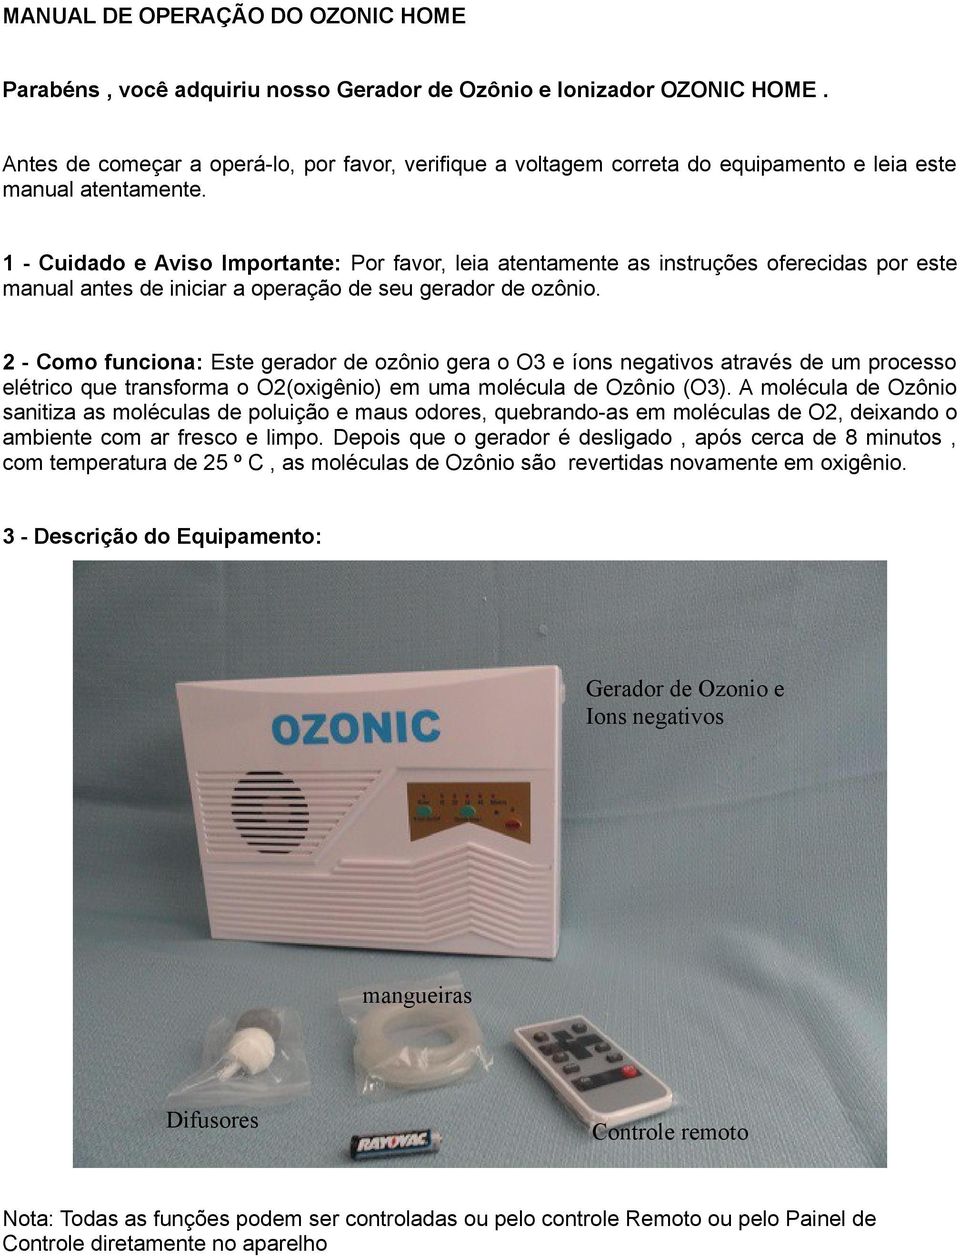 1 - Cuidado e Aviso Importante: Por favor, leia atentamente as instruções oferecidas por este manual antes de iniciar a operação de seu gerador de ozônio.